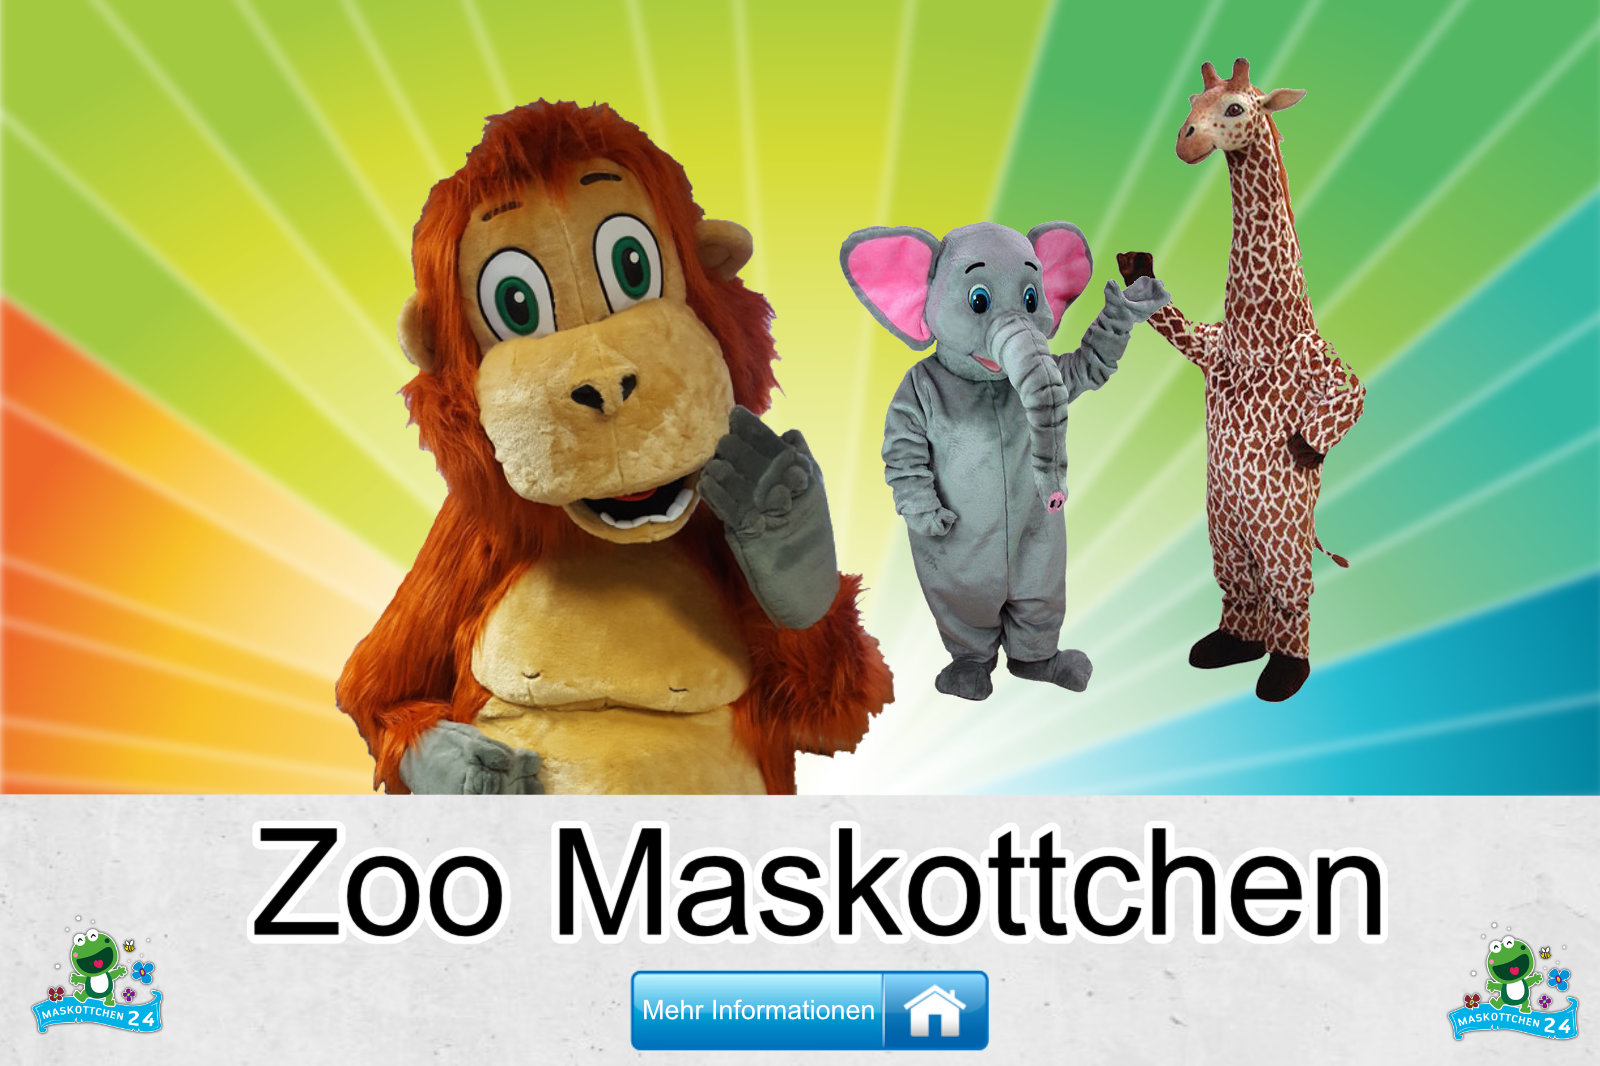 Zoo Maskottchen Kostüm kaufen